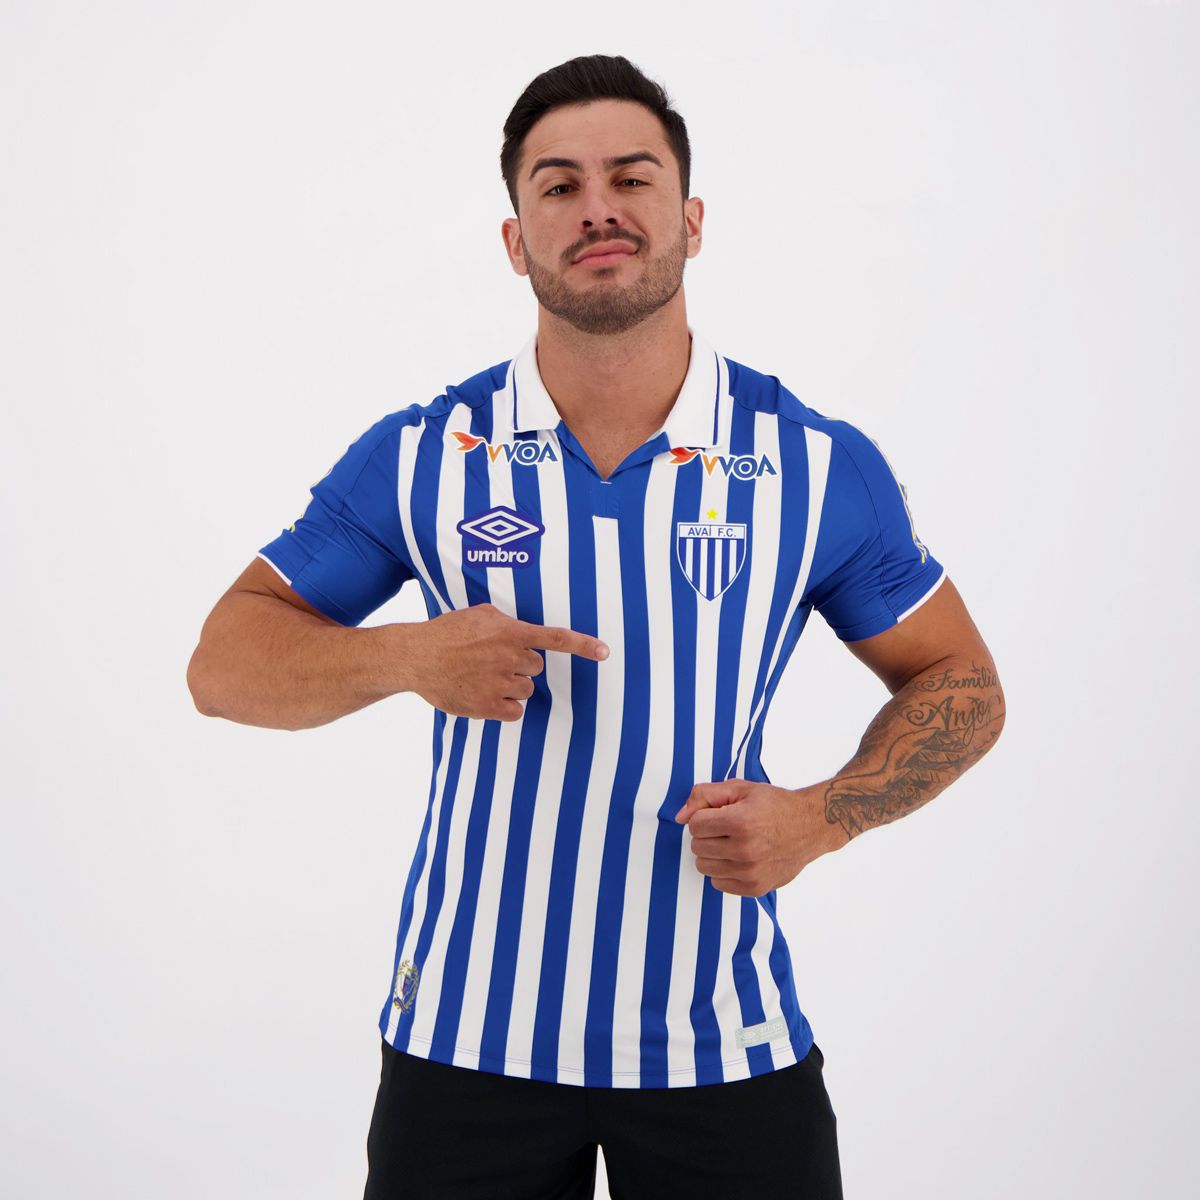 2019 2020 Umbro Brazil Avai Home Soccer Football Player Shirt Jersey 